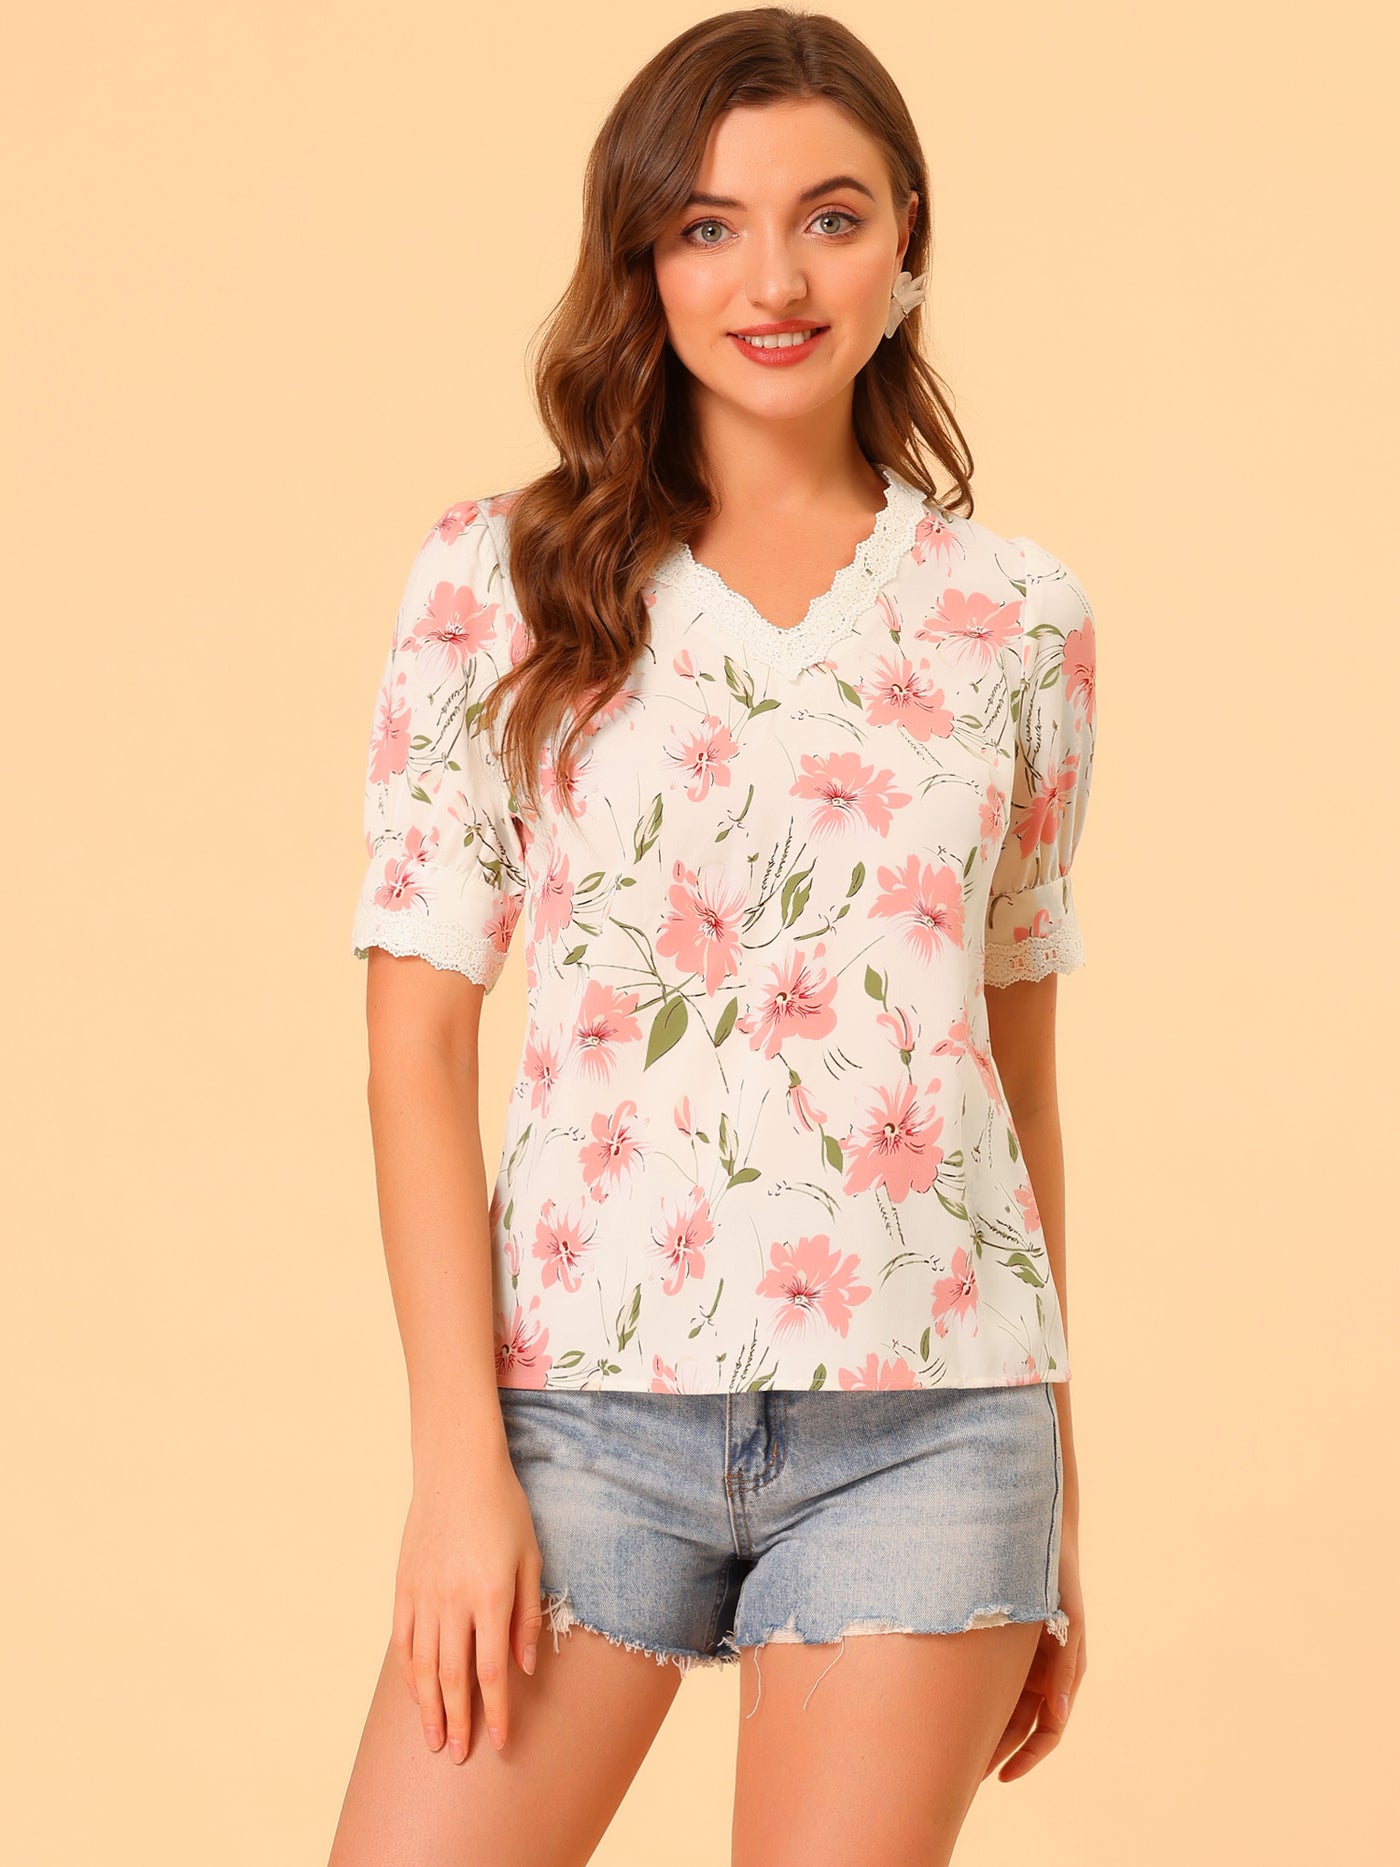 Allegra K Floral Blouse Lace Trim V Neck Summer Shirt Top